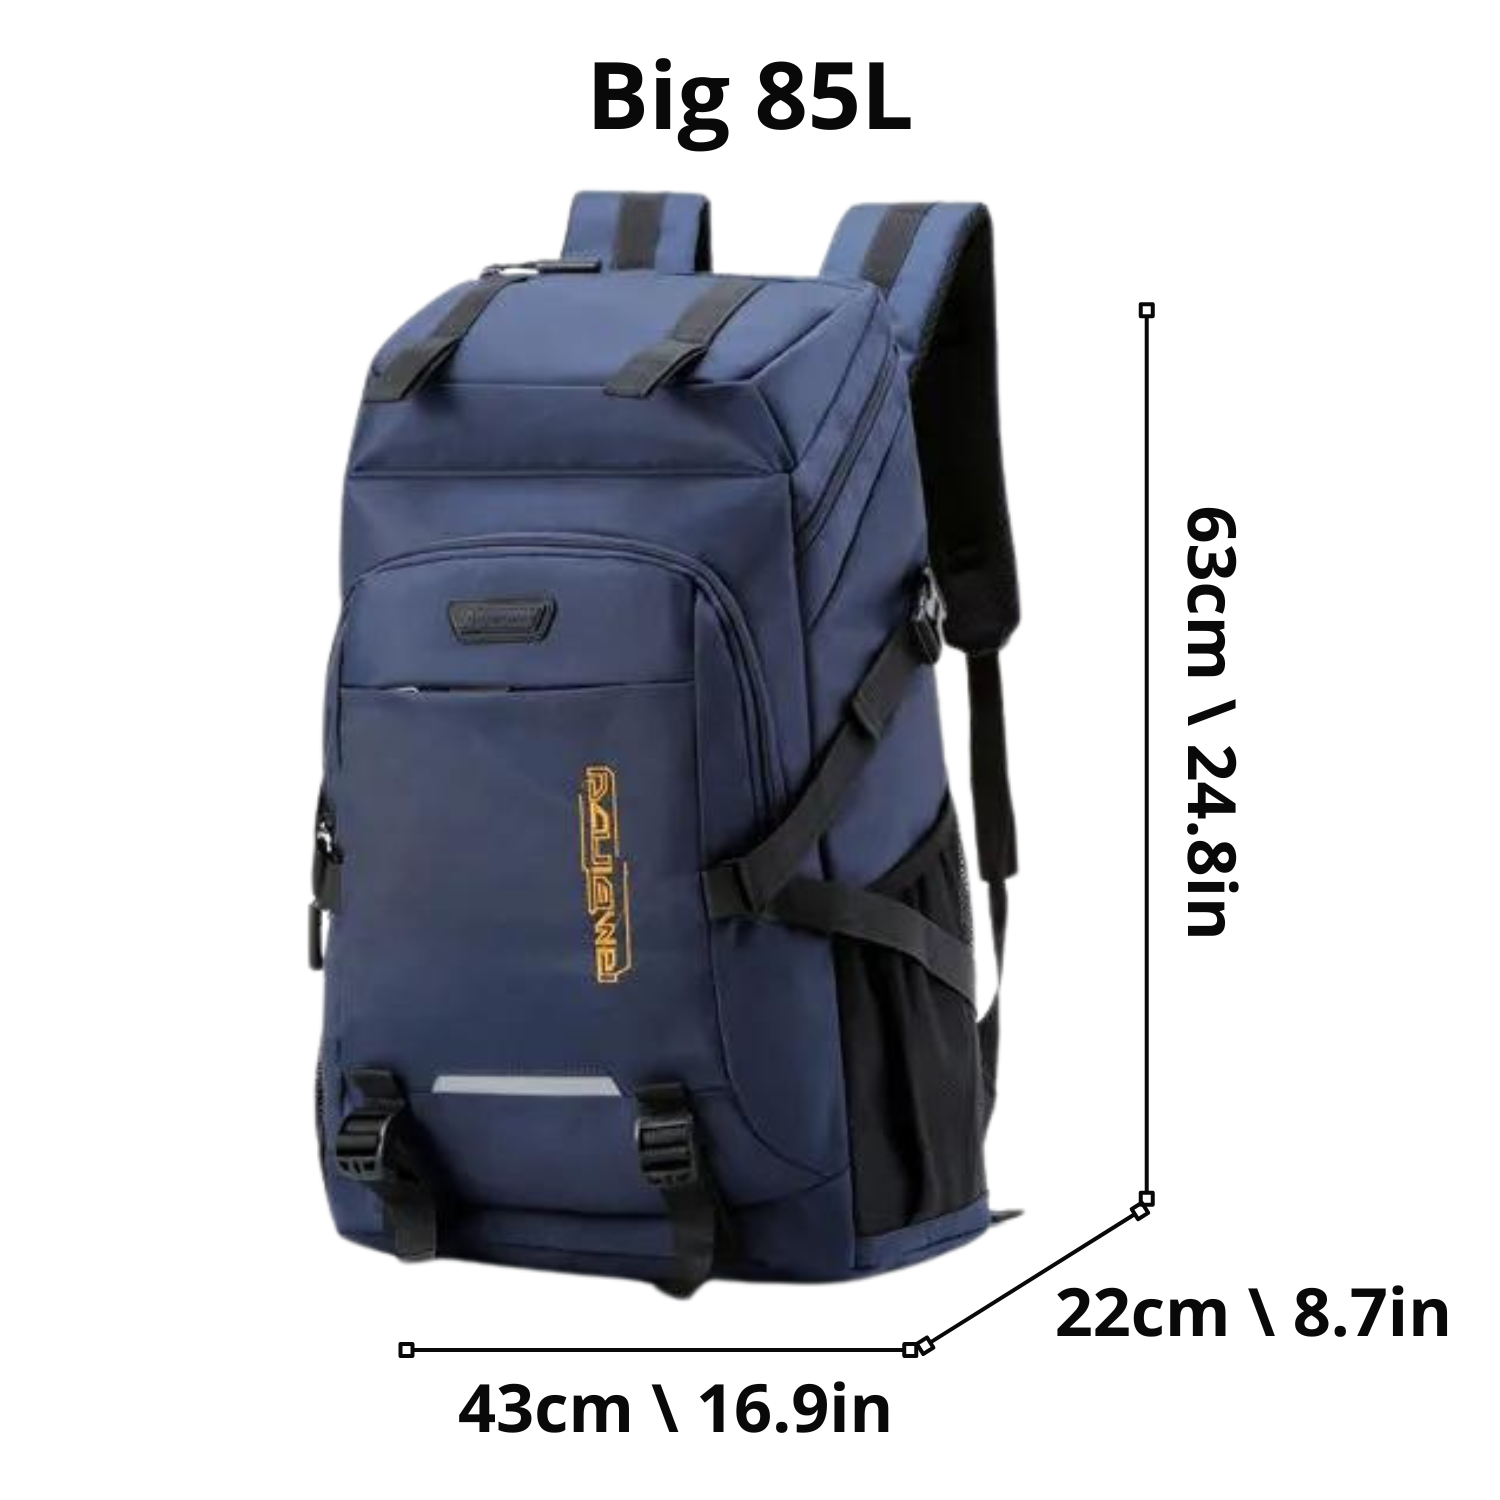 Expedition Pro Trek Backpack - Waterproof, High Capacity